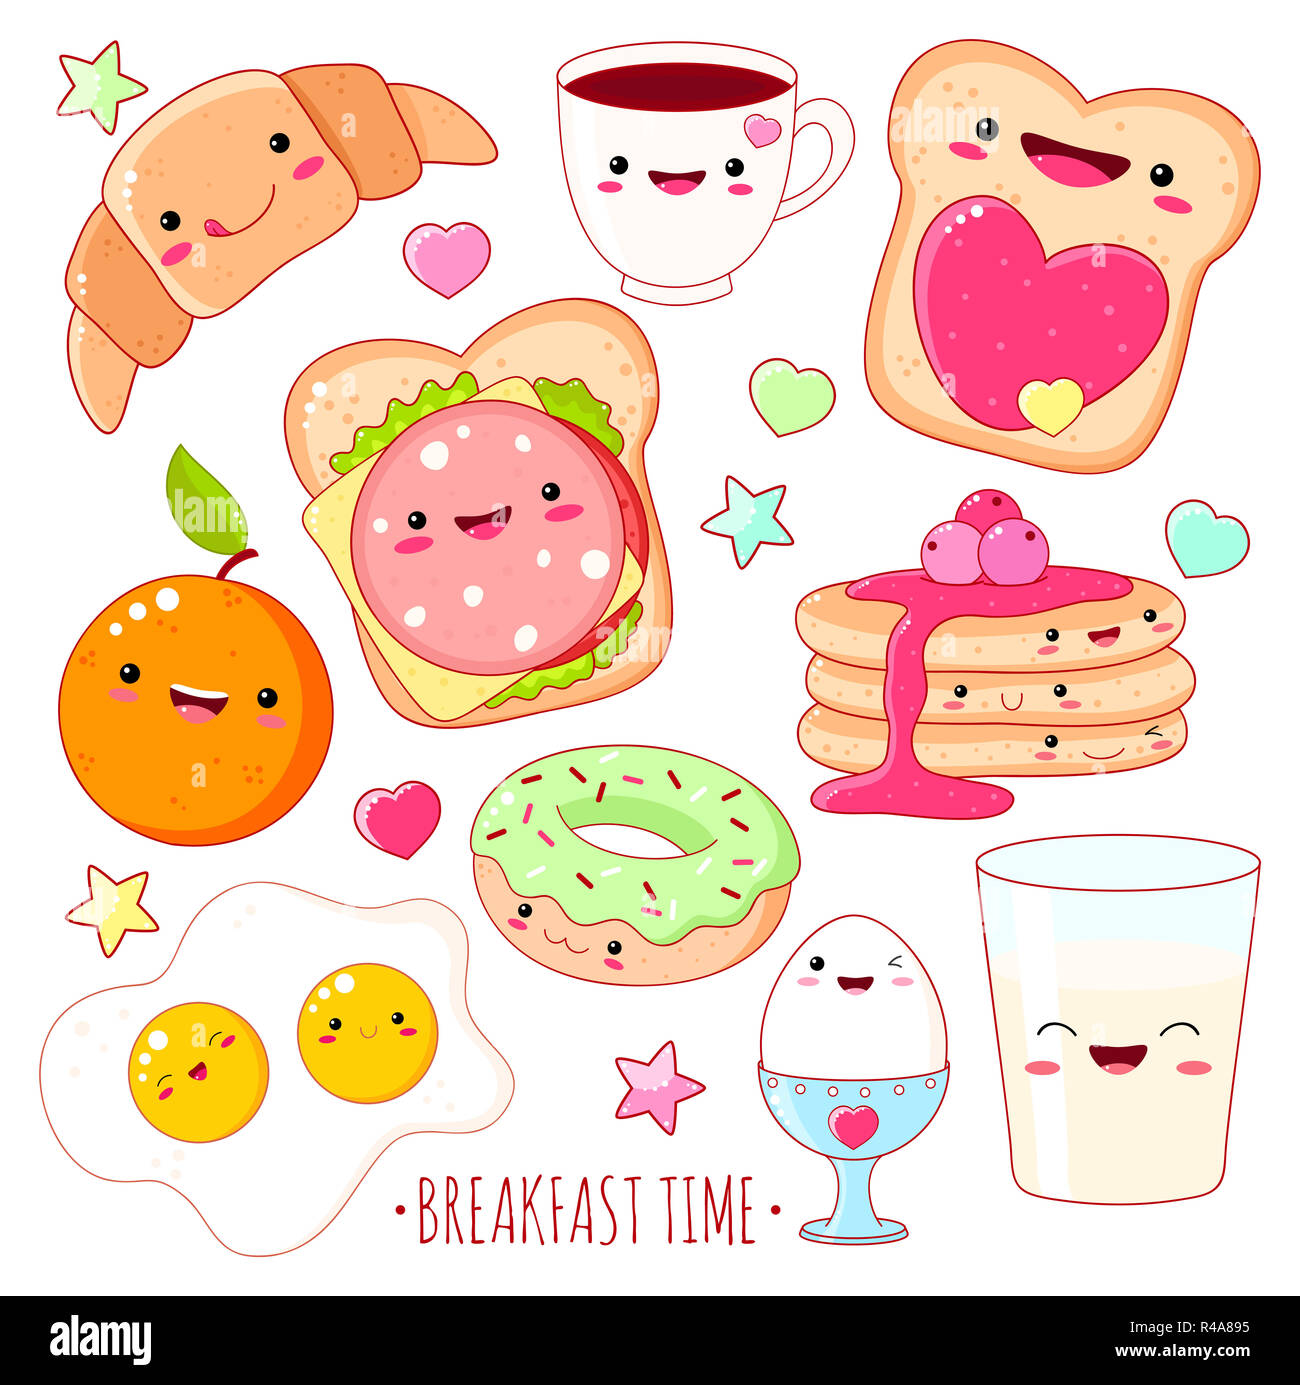 L'heure du petit-déjeuner. Ensemble d'icônes dans l'alimentation cute kawaii style avec sourire et les joues roses de sweet design. Spe8 Banque D'Images